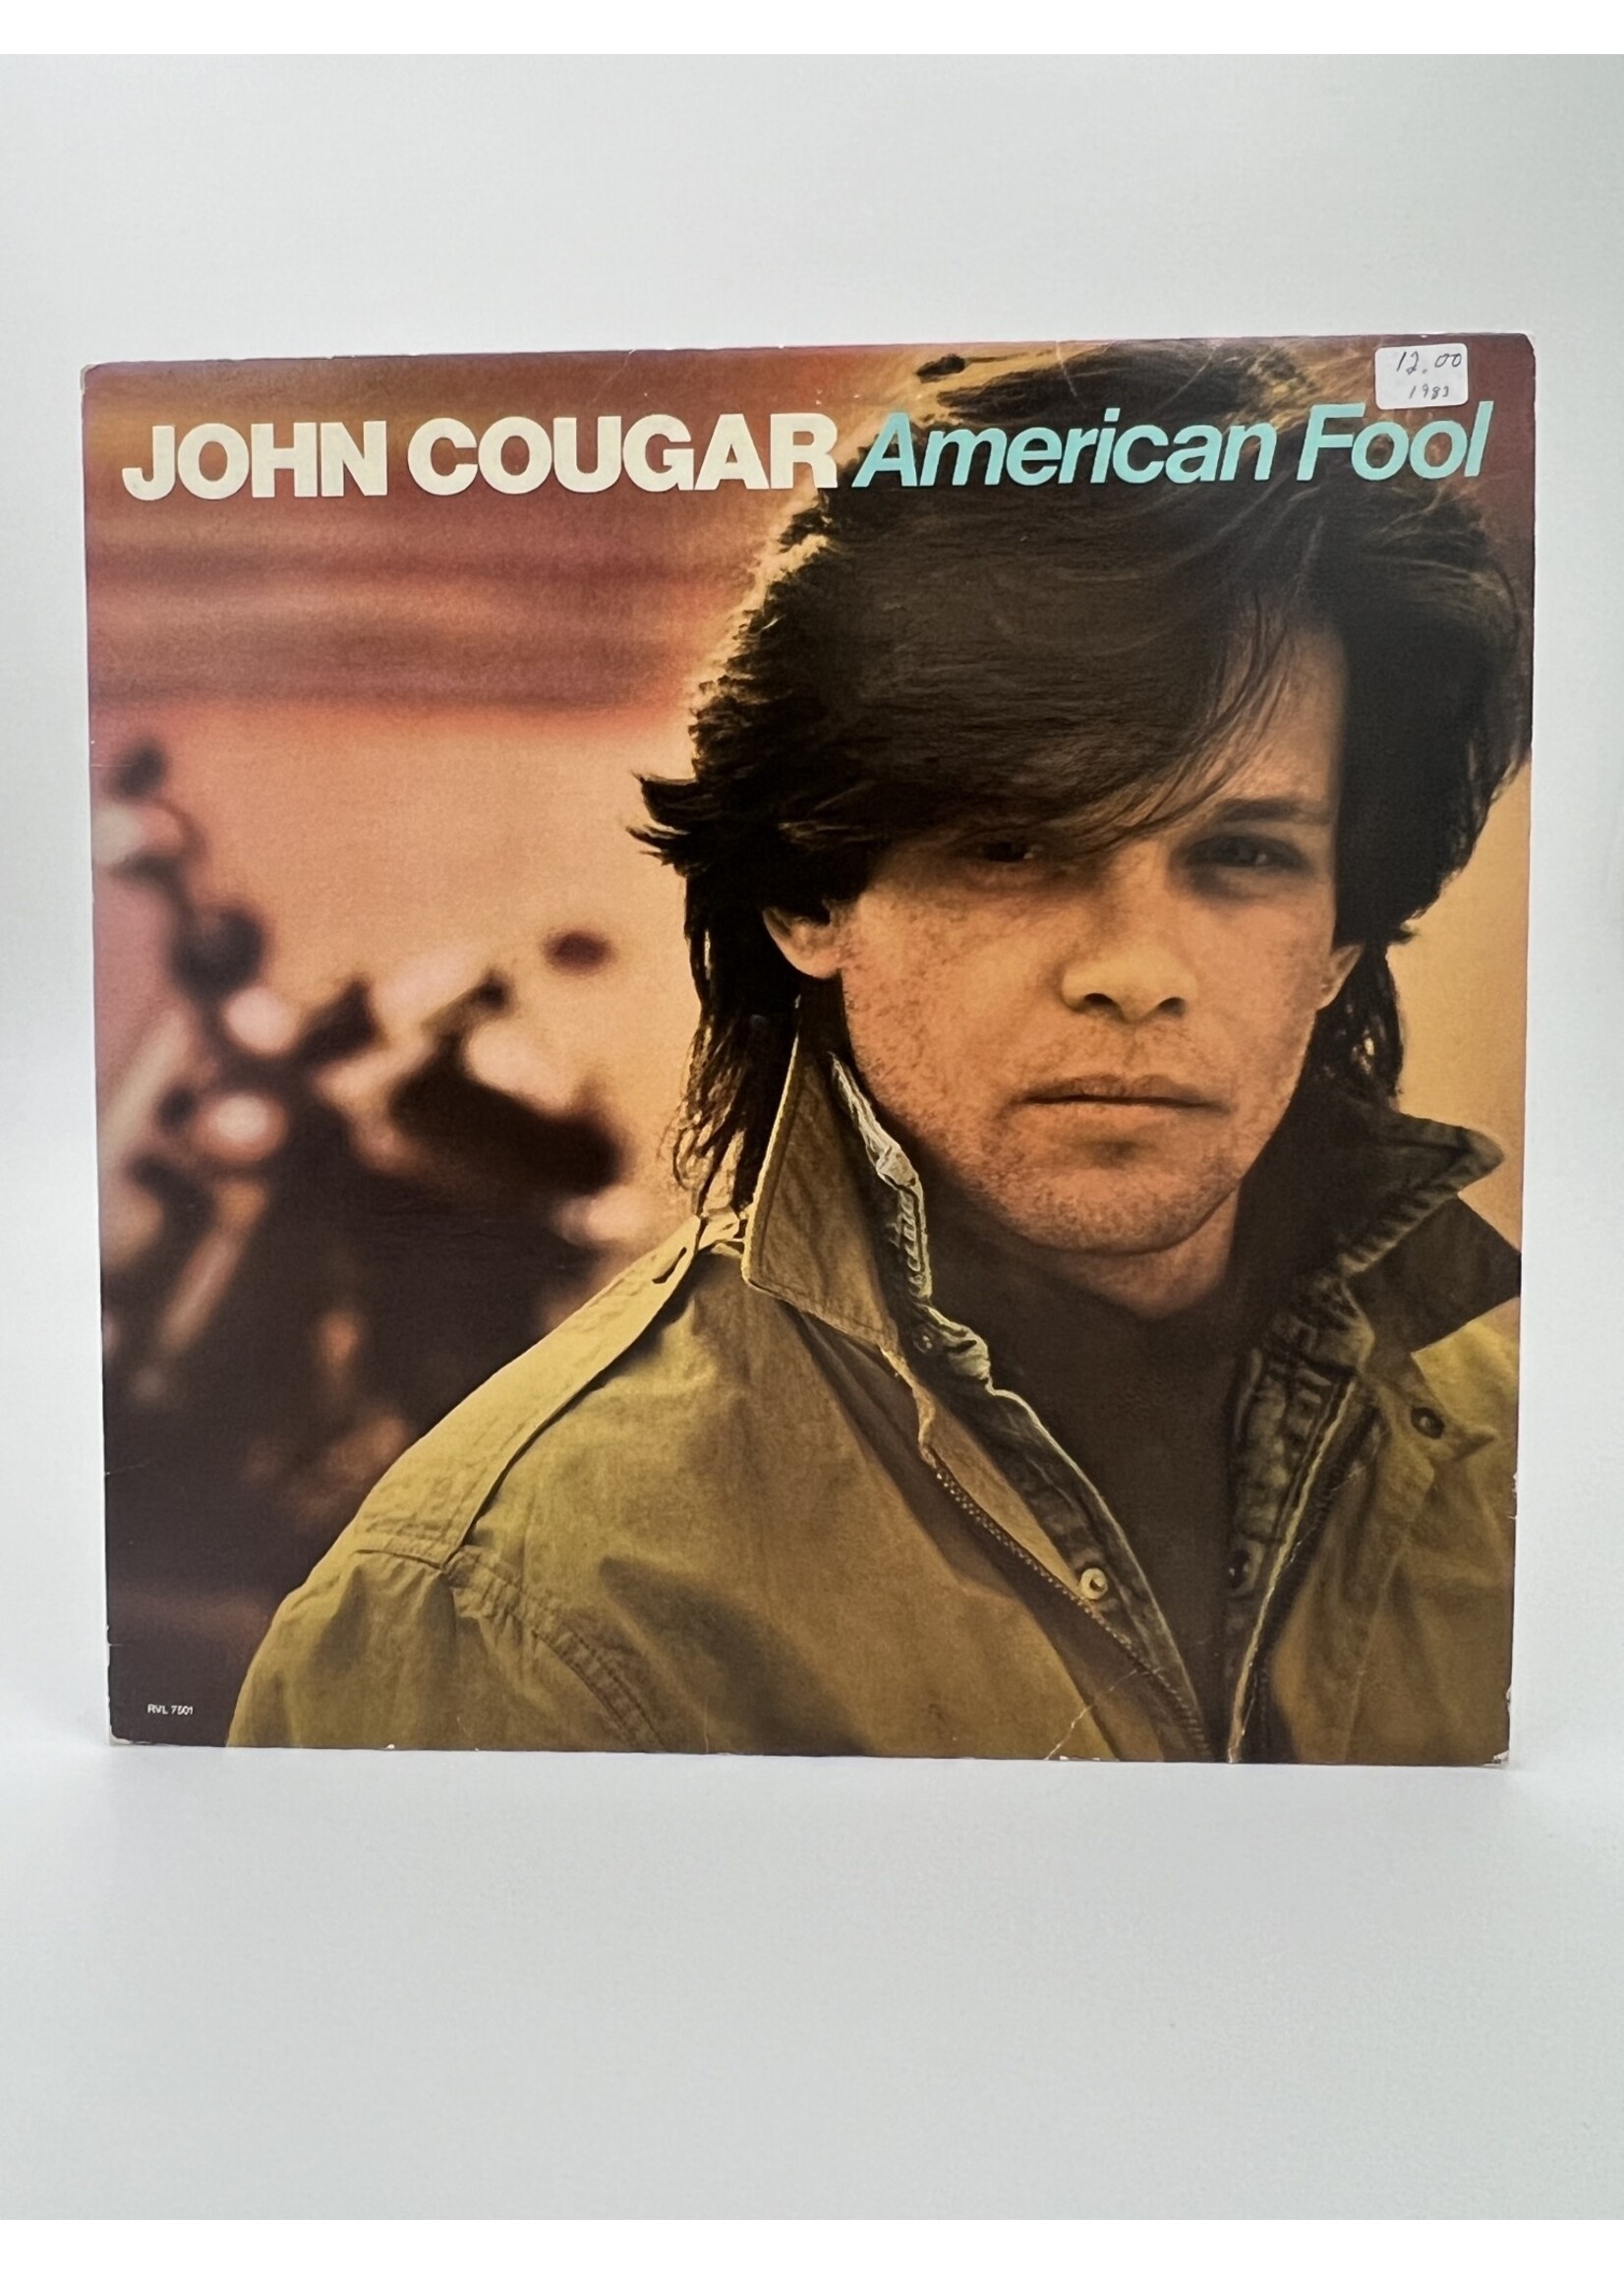 LP John Cougar American Fool LP Record